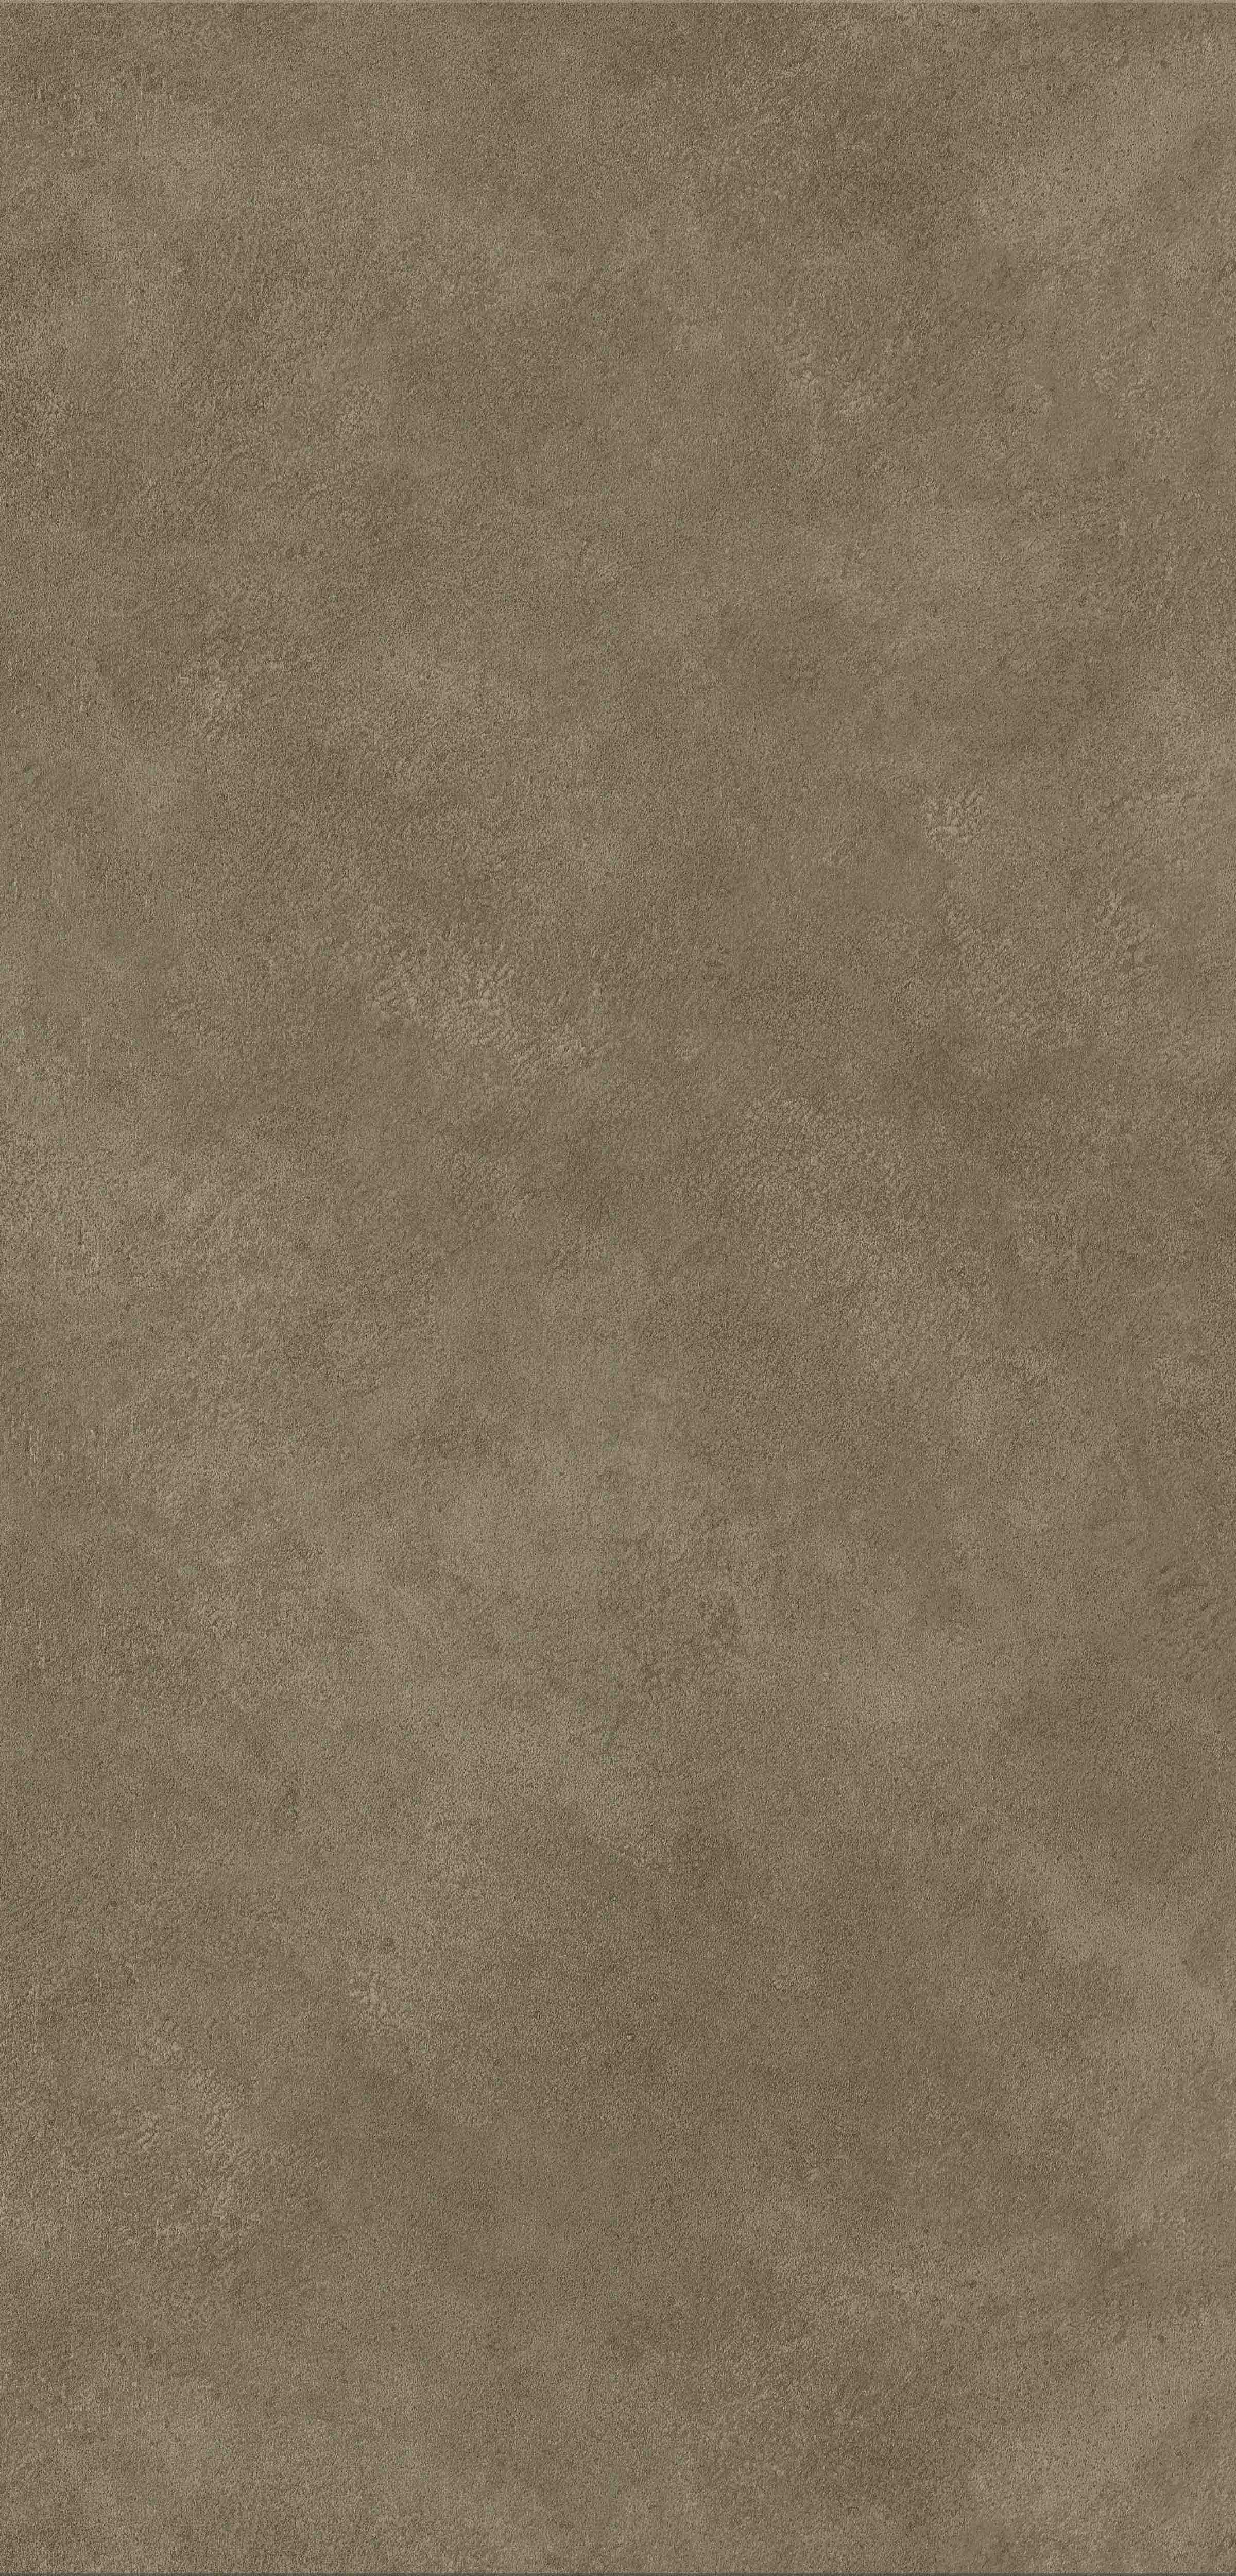 Rappórt | Seasoned Concrete, 2969 | Paragon Carpet Tiles | Commercial Carpet Tiles